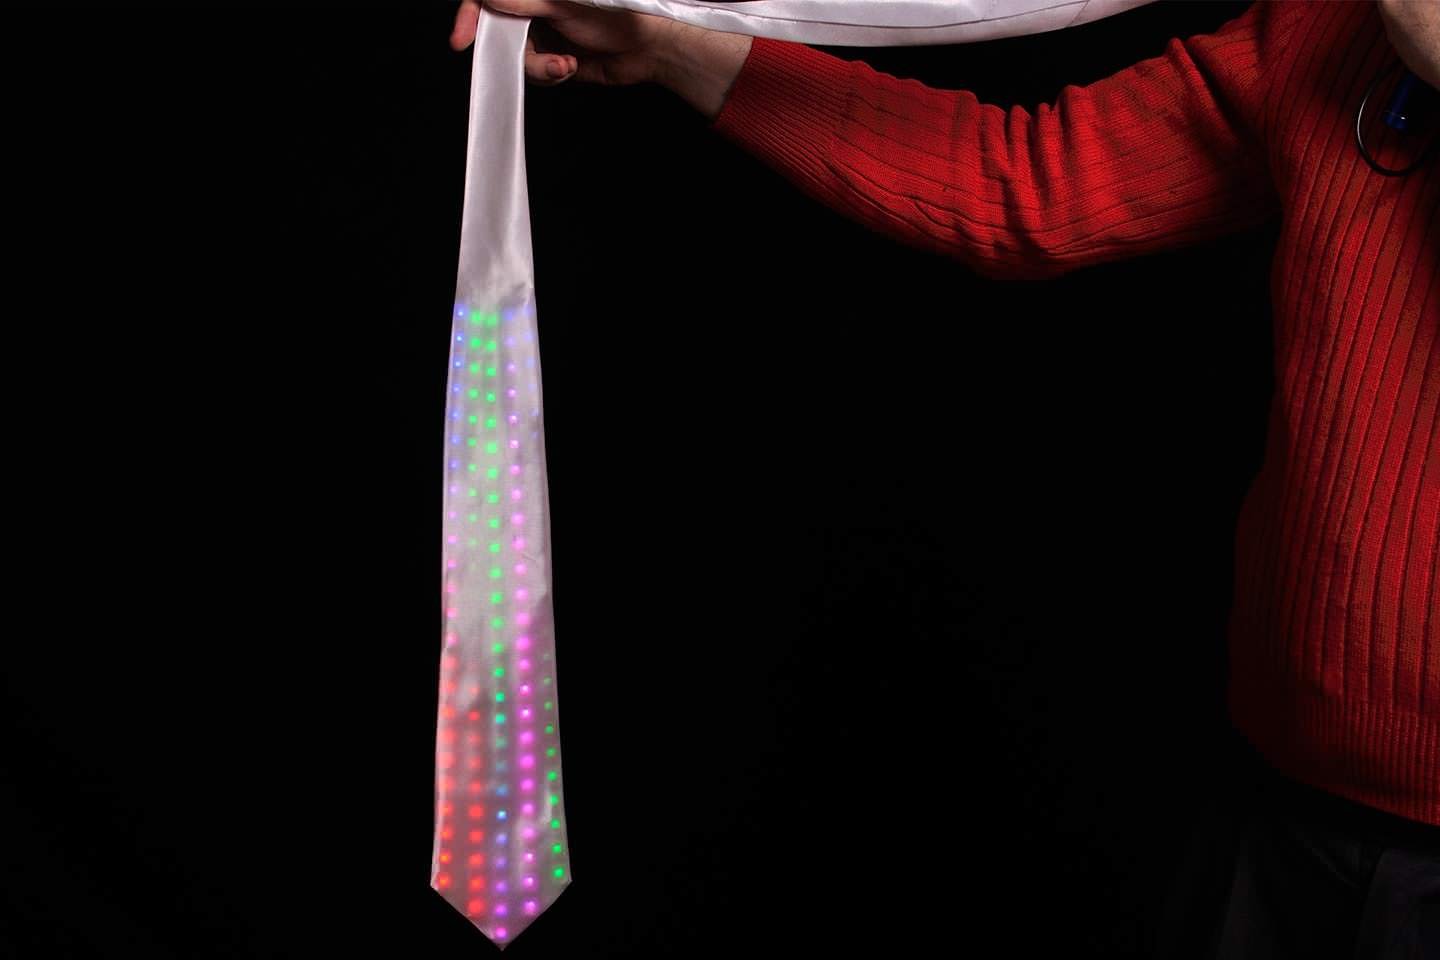 LED tie